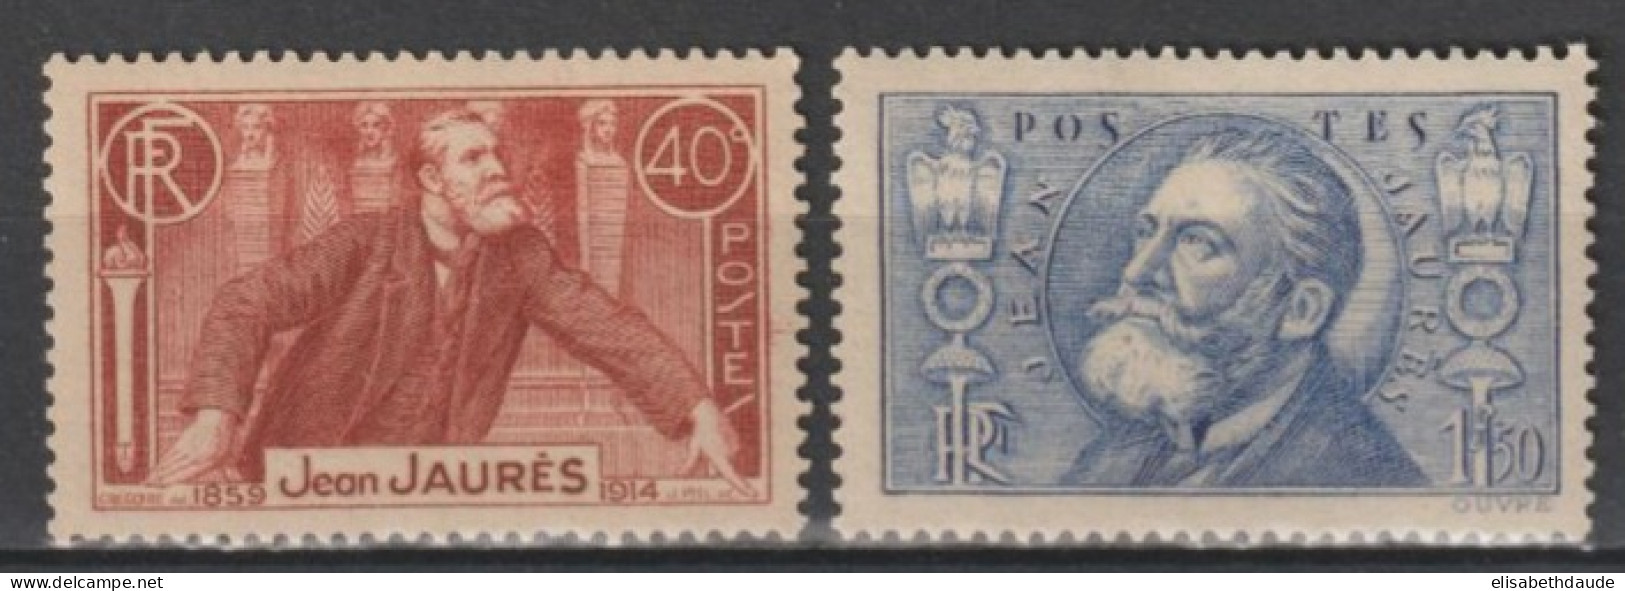 1936 - YVERT N° 319 ** MNH - COTE = 50 EUR. - JAURES - Nuevos